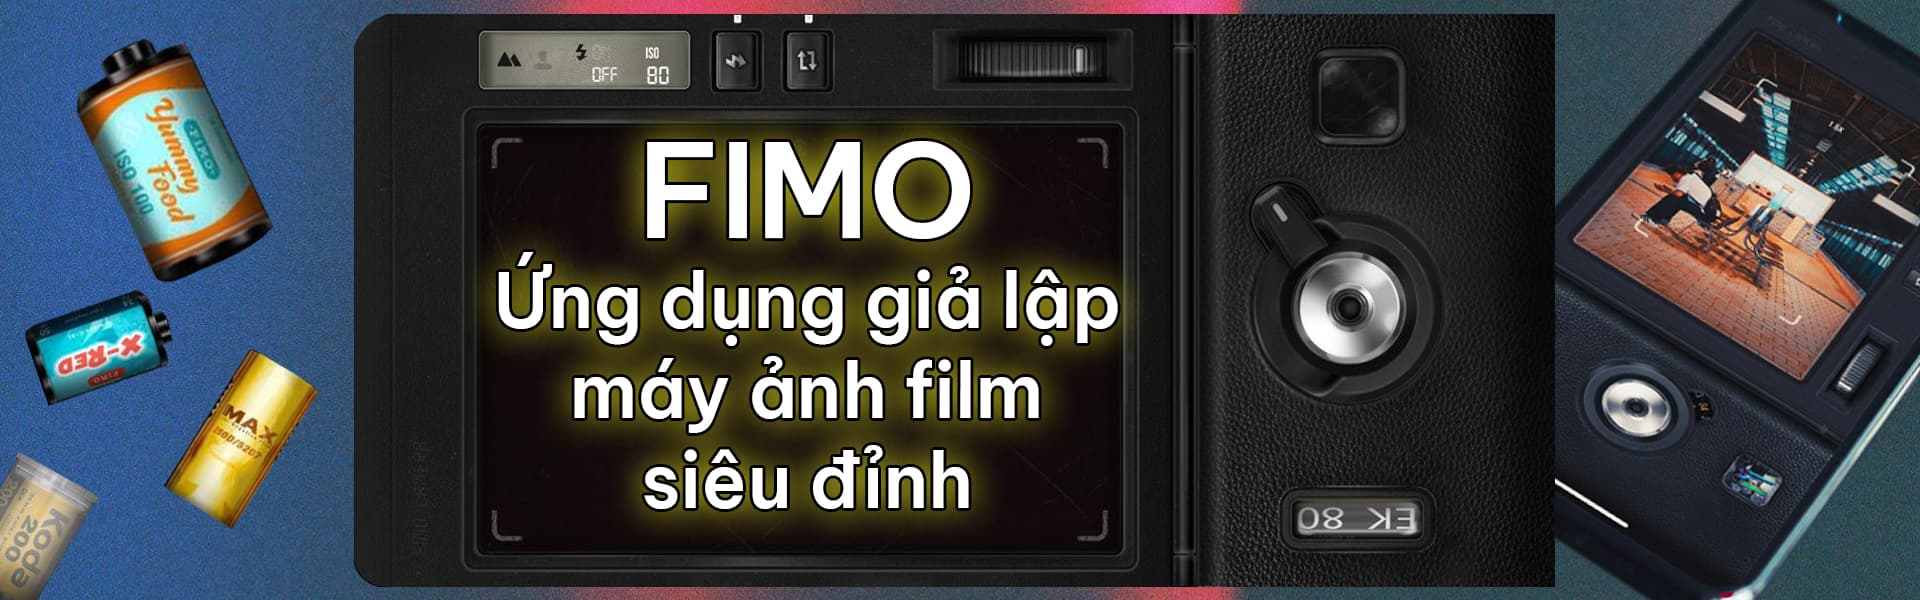 Fimo - App Chụp Giả Lập Máy Ảnh Cổ Điển Siêu Đỉnh